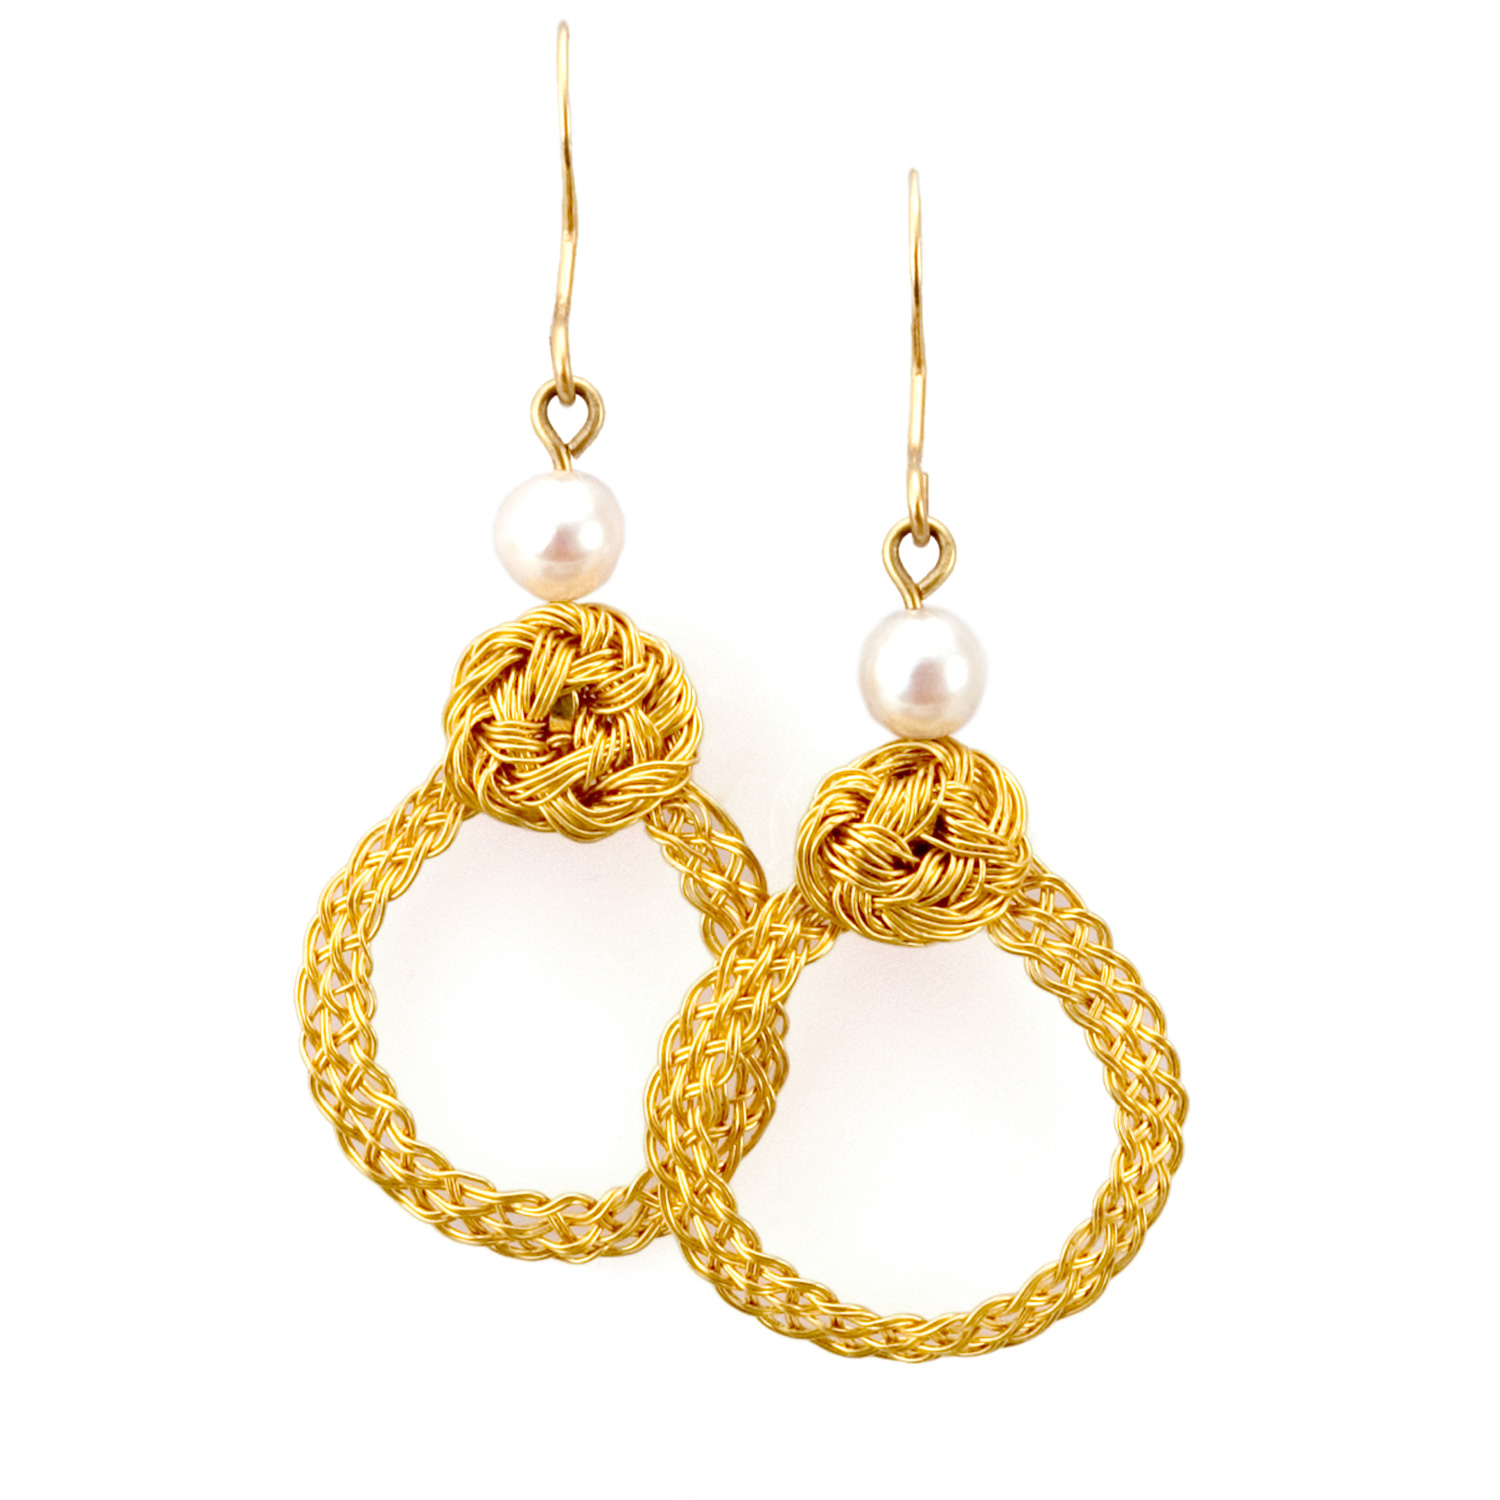 Turks Head Loop Earrings in 22k gold with akoya pearls by Tamberlaine